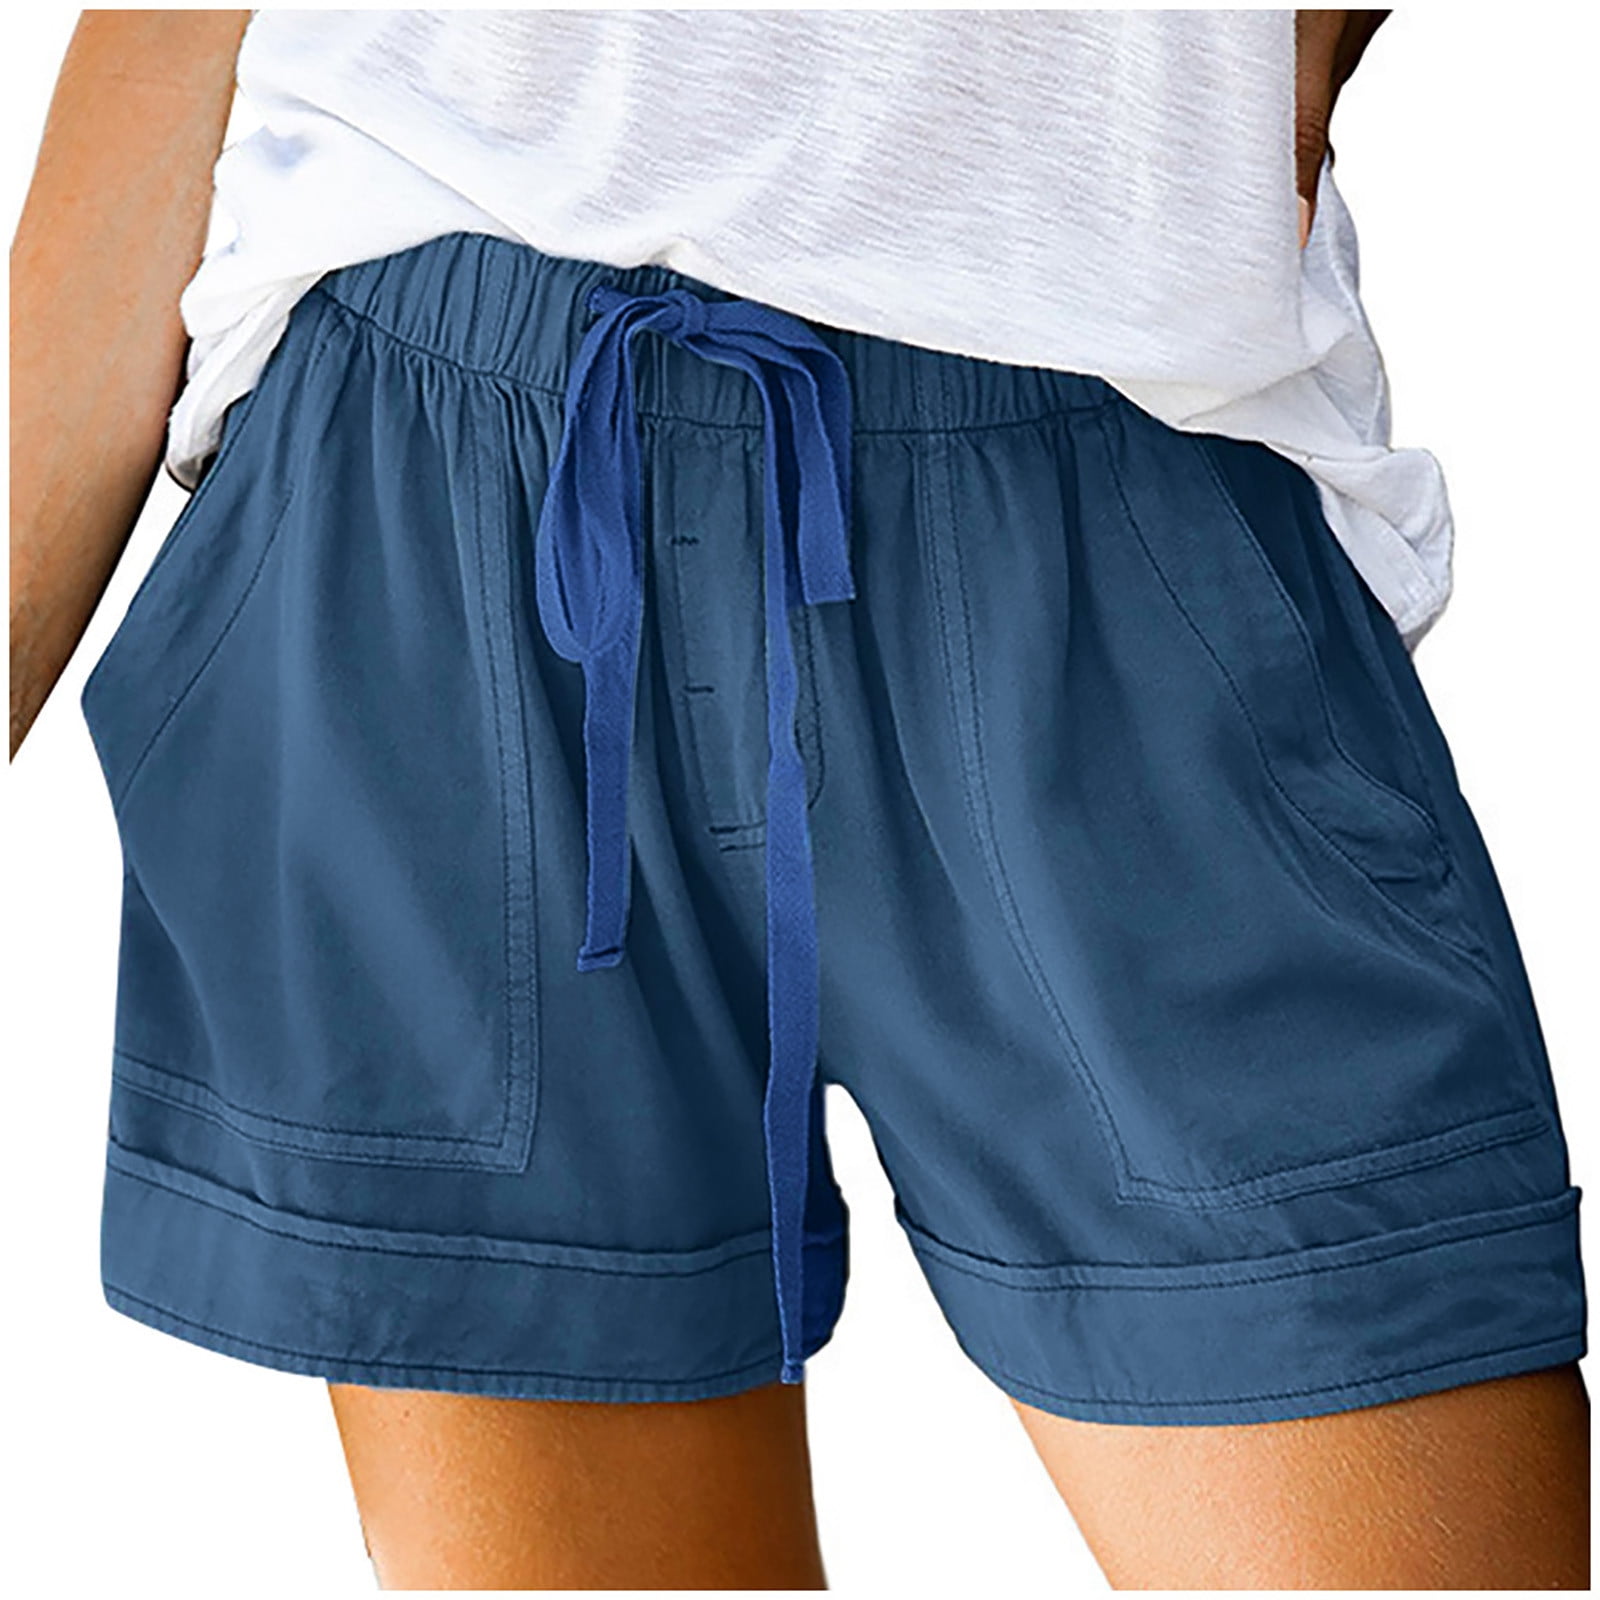 boog Eenzaamheid Plaats Owordtank Pleated Lounge Shorts with Pockets Solid Color Drawstring Elastic  Waist Bermuda Shorts Light blue XL - Walmart.com